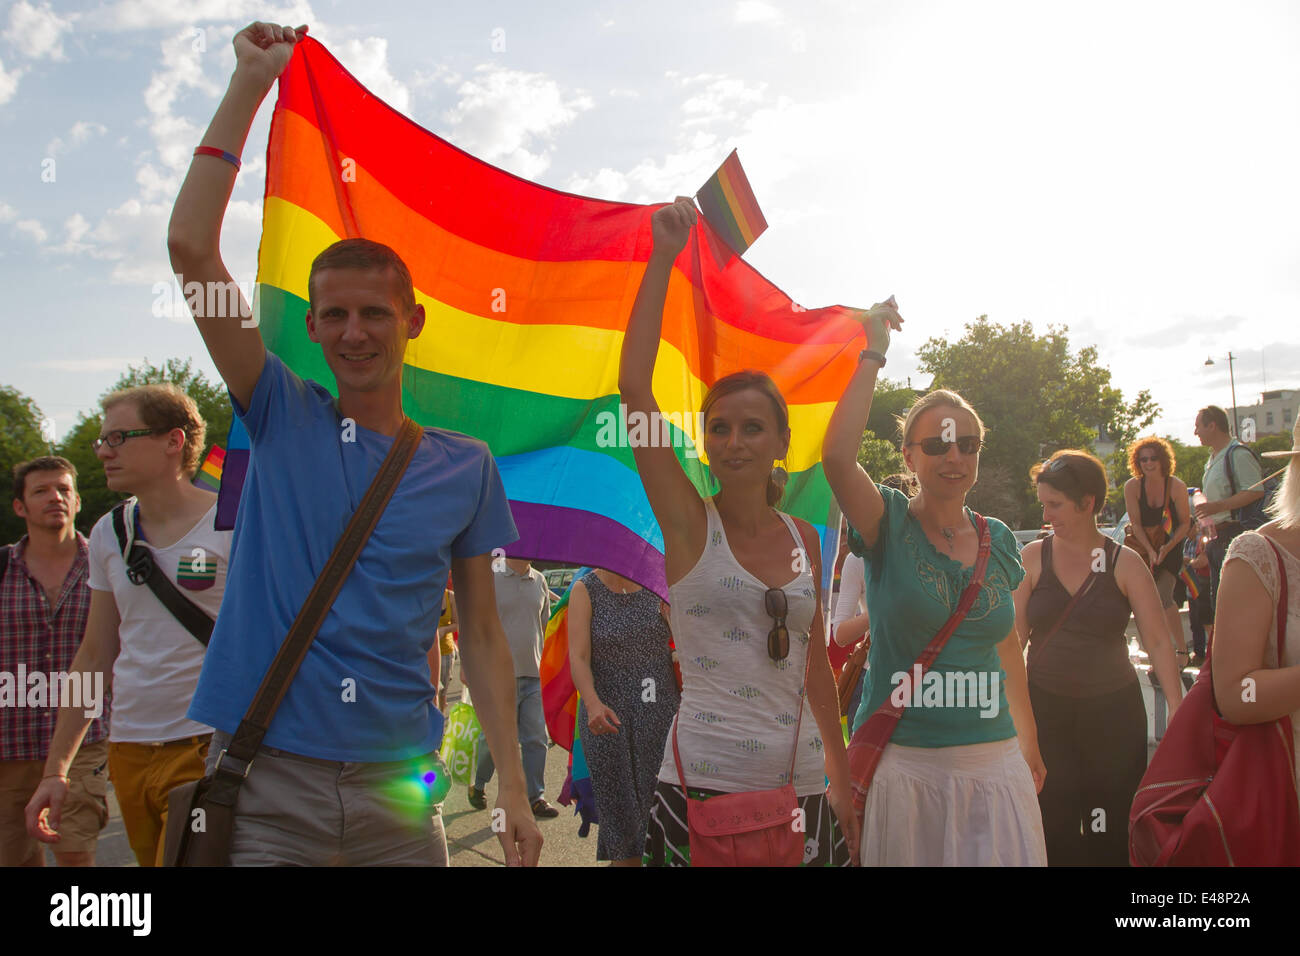 Budapest, Hongrie. 5 juillet, 2014. Les participants de la Gay Pride Parade marche à travers la ville de Budapest, en Hongrie, le 5 juillet 2014. Le thème de la parade était 'Budapest Pride : 365', ce qui signifie que les participants s'efforçaient d'acceptation par le biais de l'année, pas seulement en ce jour. Divers groupes prétendant représenter 'Valeurs' de la famille des contre-manifestations organisées le long du parcours. La police a arrêté deux manifestants. Credit : Attila Volgyi/Xinhua/Alamy Live News Banque D'Images